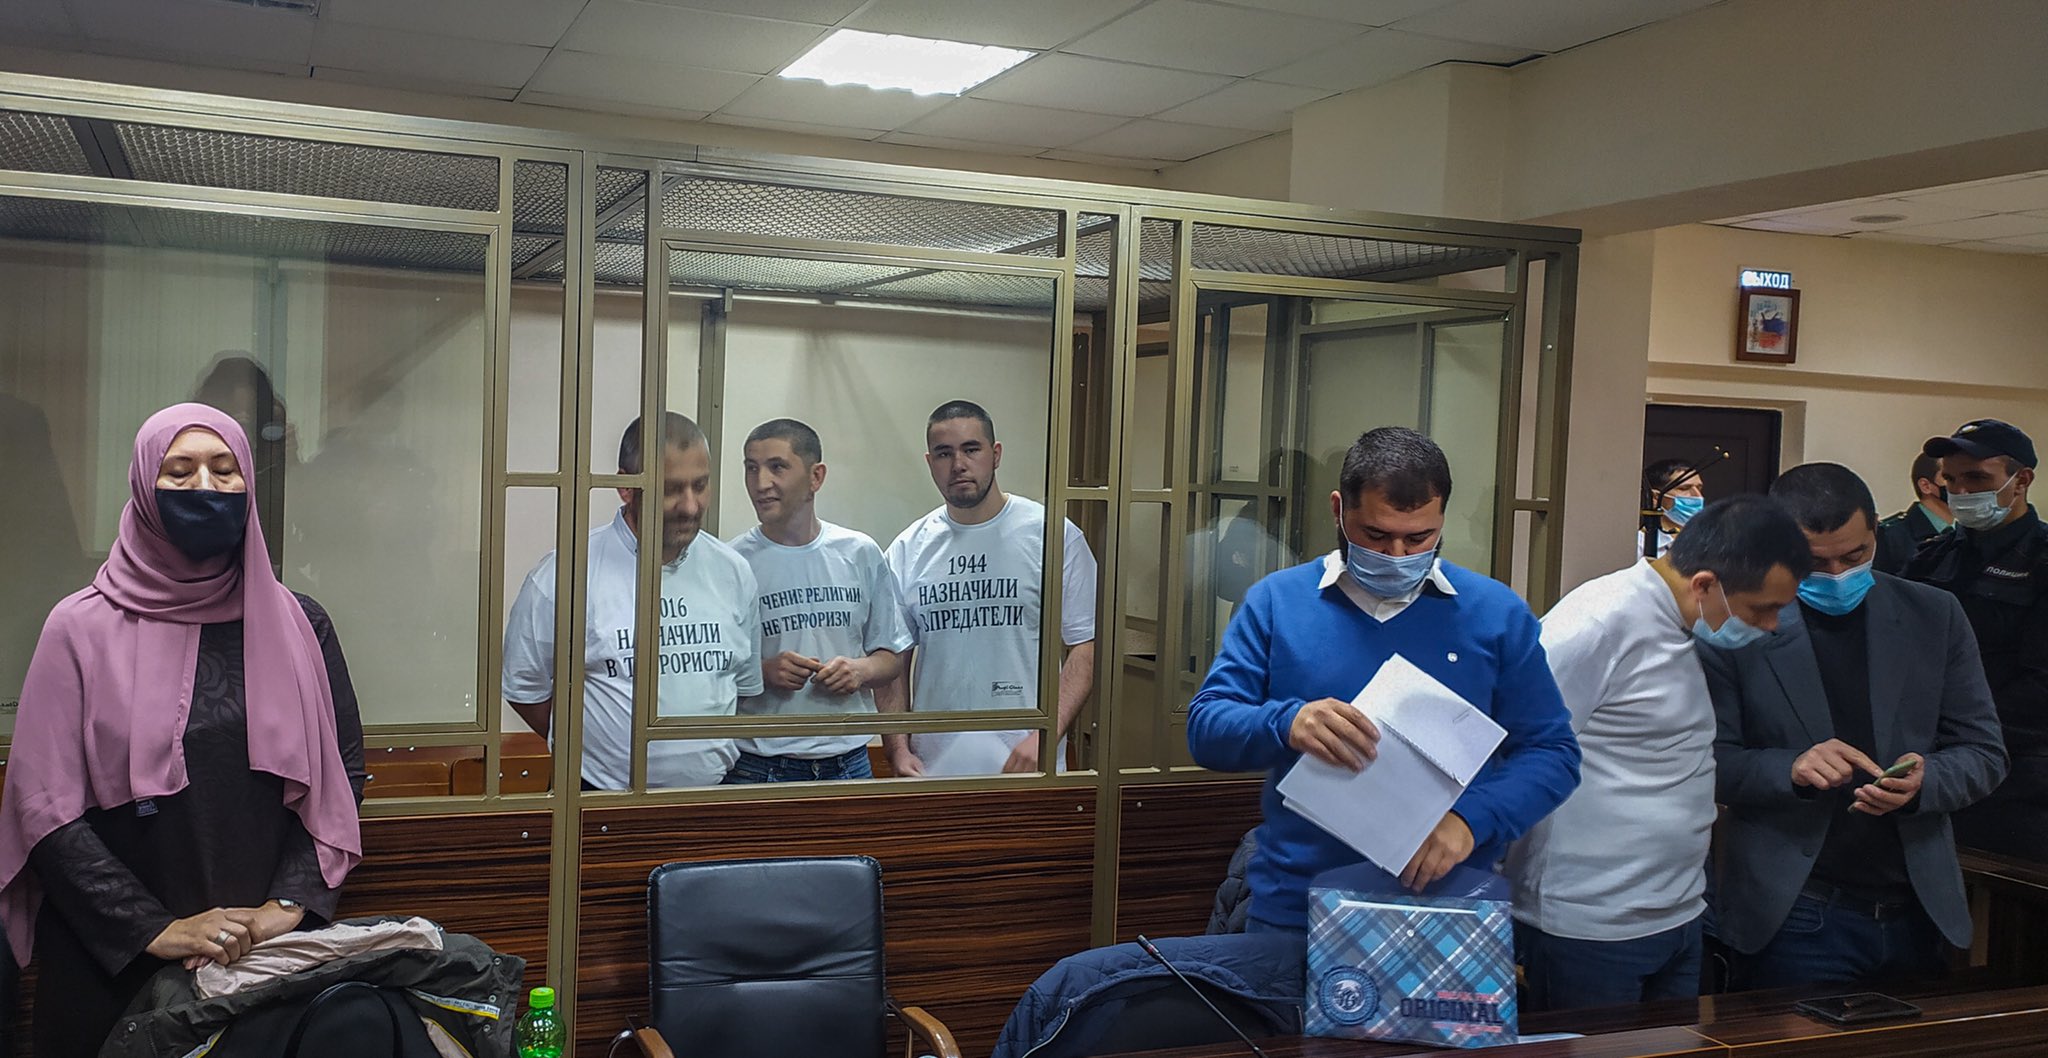 В России объявили приговор фигурантам красногвардейского «дела Хизб ут-Тахрир»: крымские татары получили от 12 до 17 лет заключения